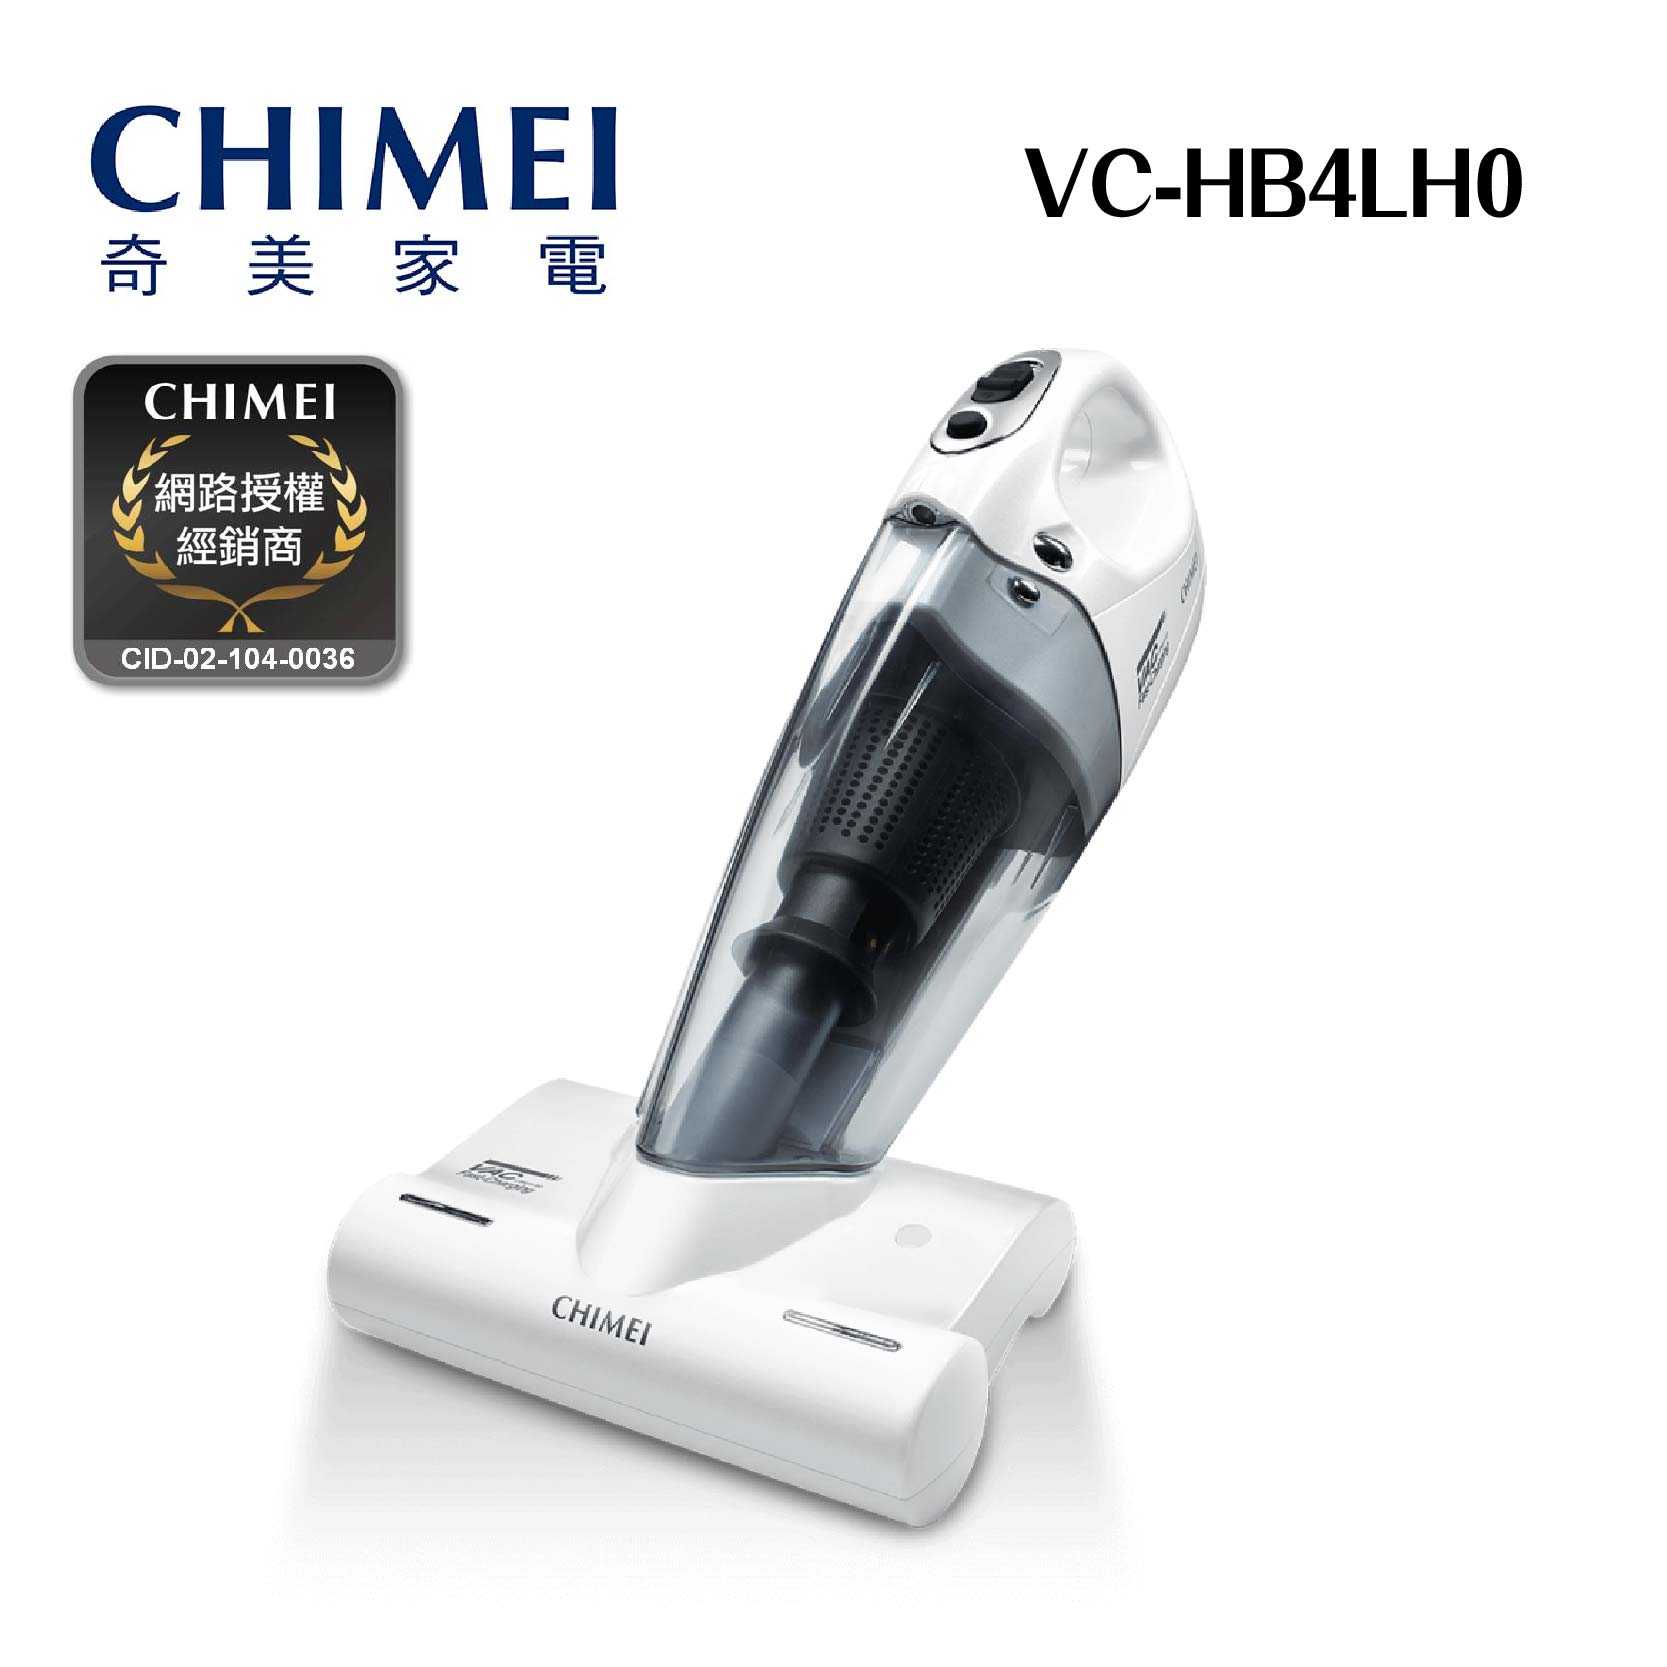 現貨『奇美無線多功能UV除蹣吸塵器』VC-HB4LH0 抗菌 抗過敏 除塵 除螨 無線吸塵器 CHIMEI 奇美